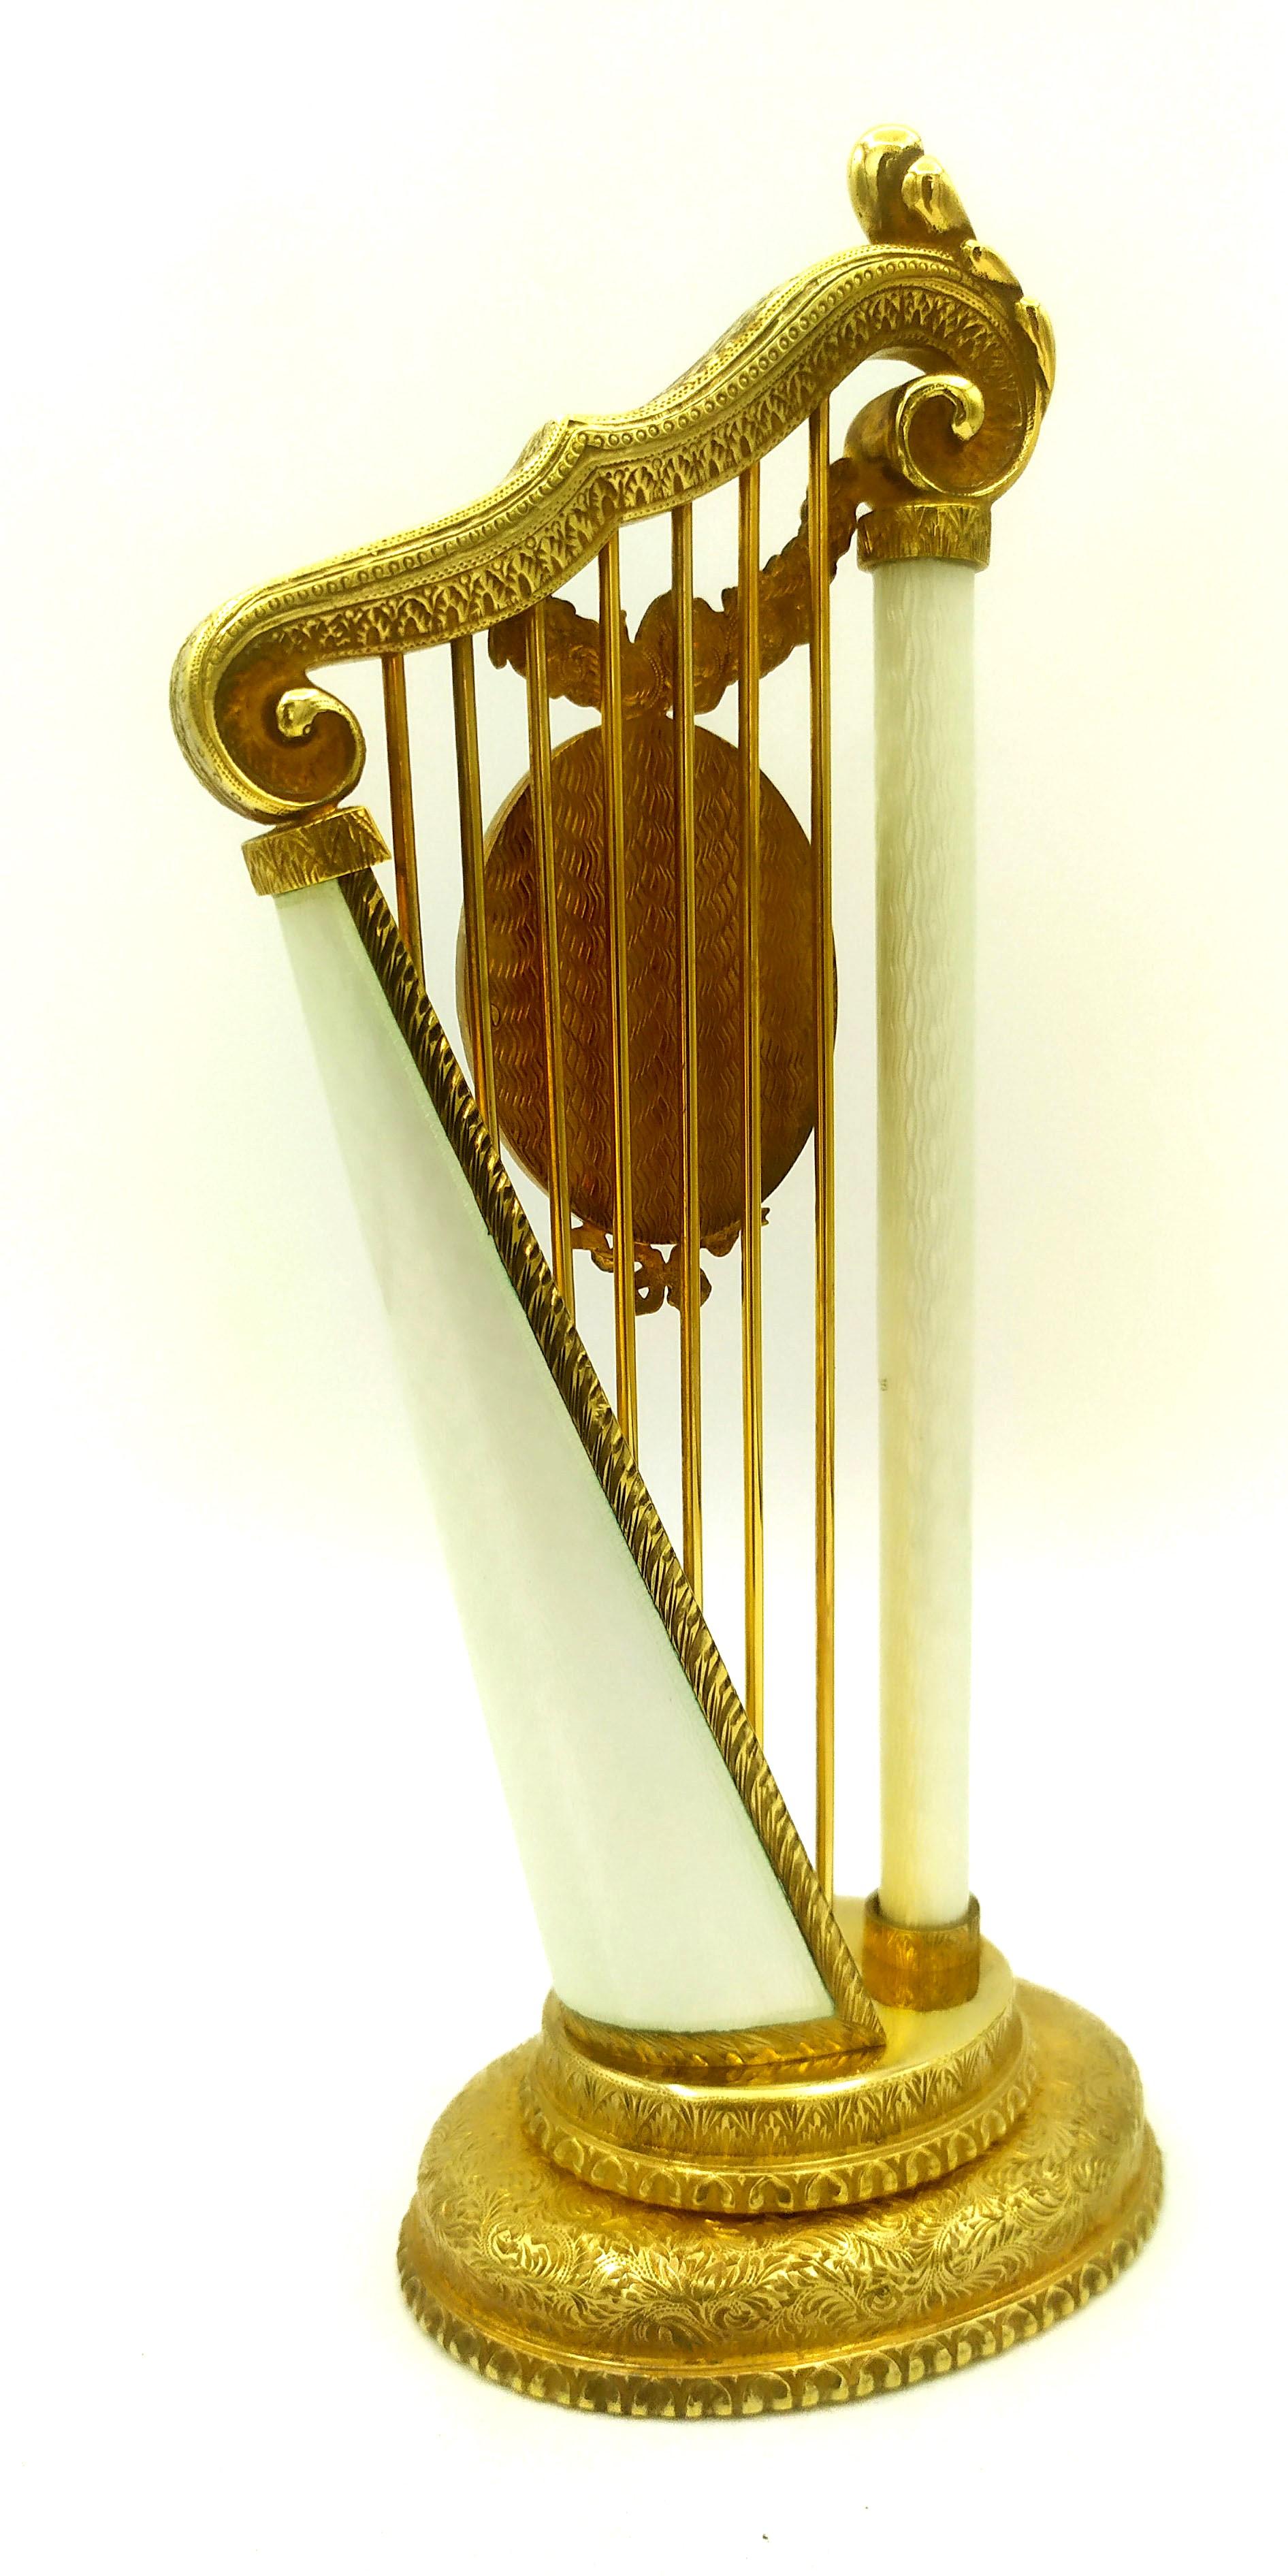 Ovaler Fotorahmen, eingefügt in ein harfenförmiges Objekt, aus 925/1000 Sterlingsilber, vergoldet mit transluzenter, gebrannter Emaille auf Guillochierung, inspiriert von einem Modell von Peter Carl Fabergè im Stil des späten russischen